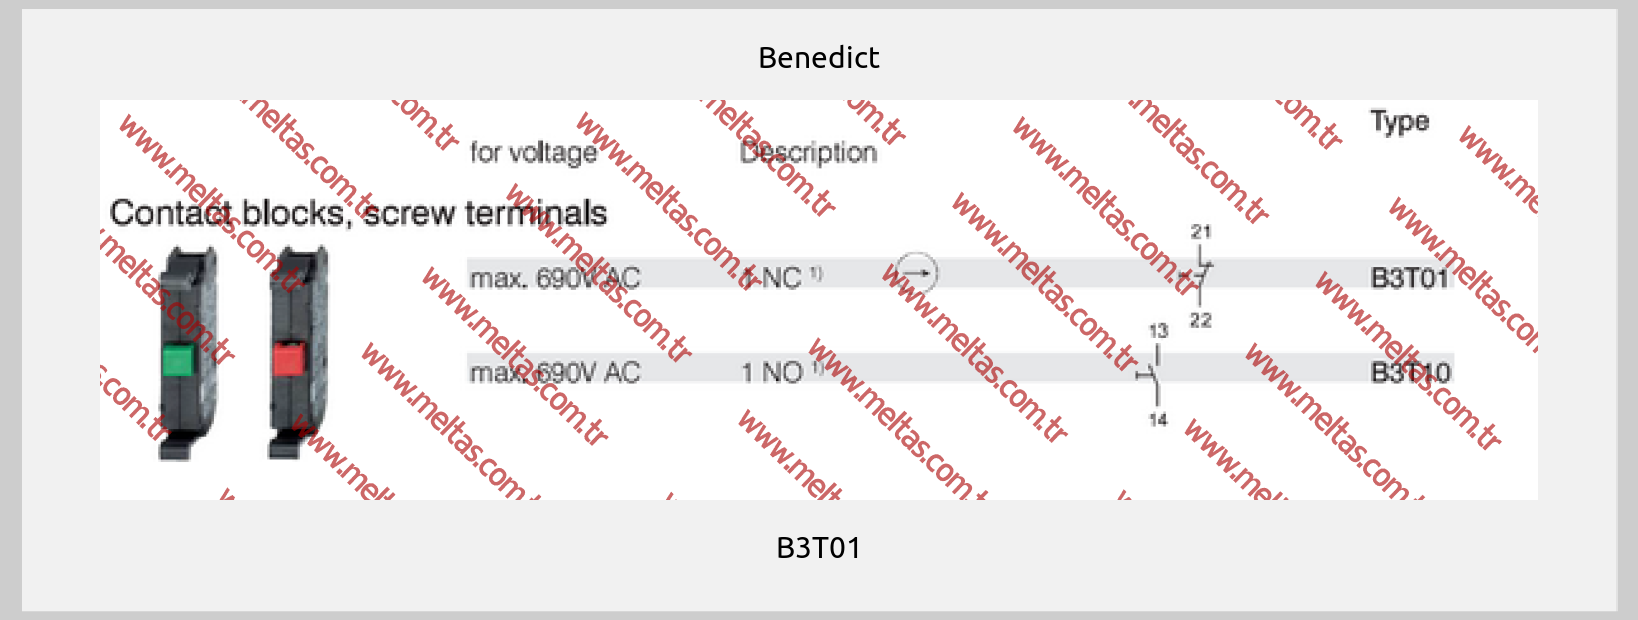 Benedict-B3T01